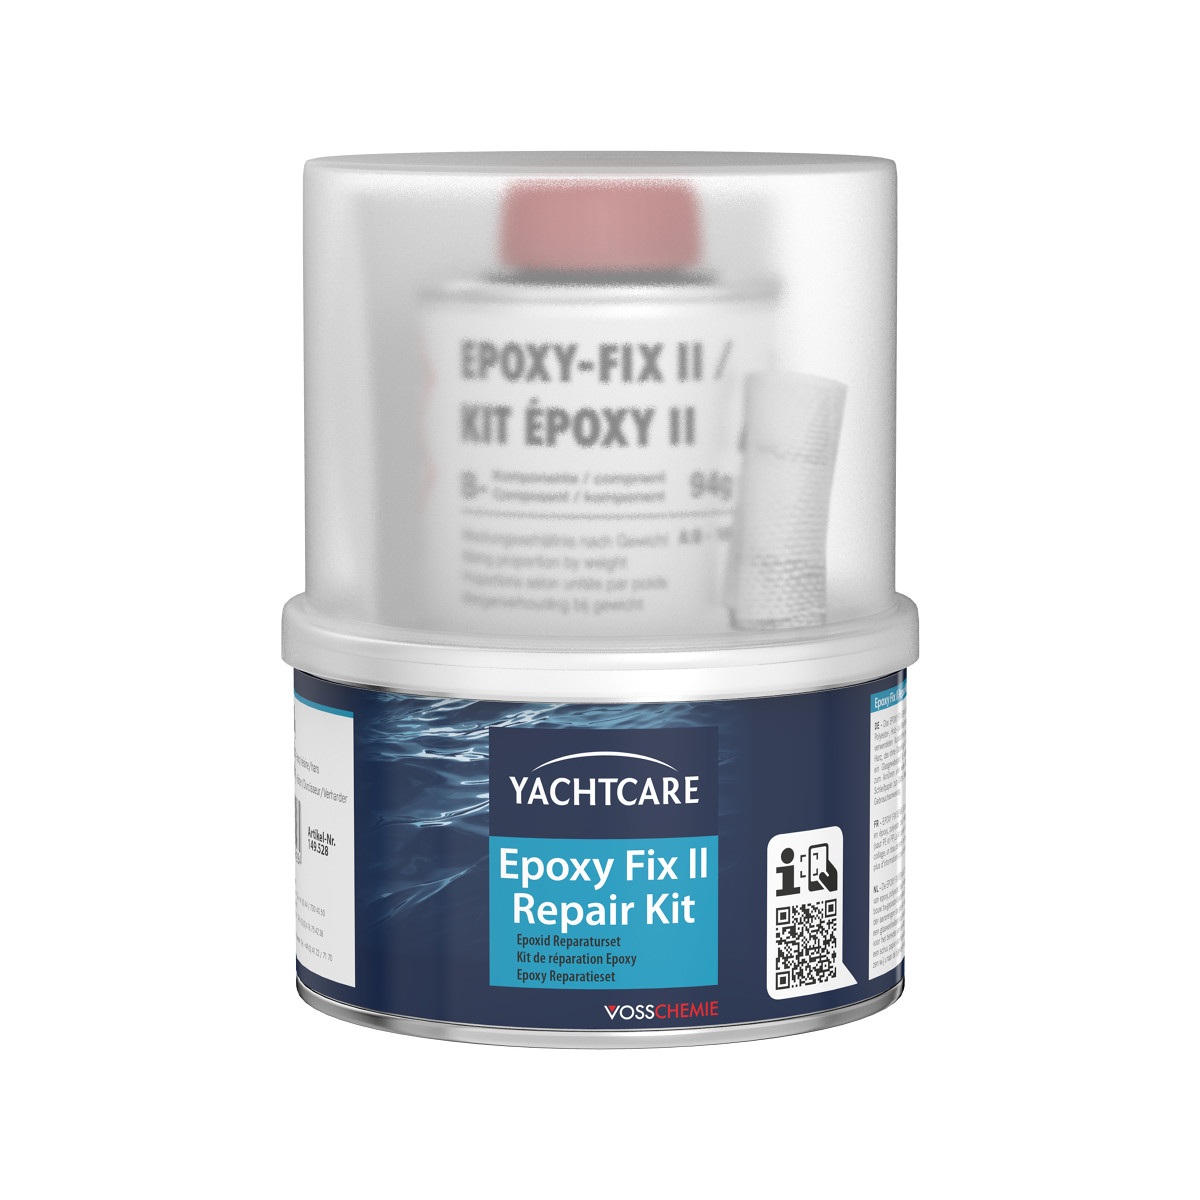 Yachtcare Epoxy Fix II Repair Kit Epoxid-kit de réparation - 250g